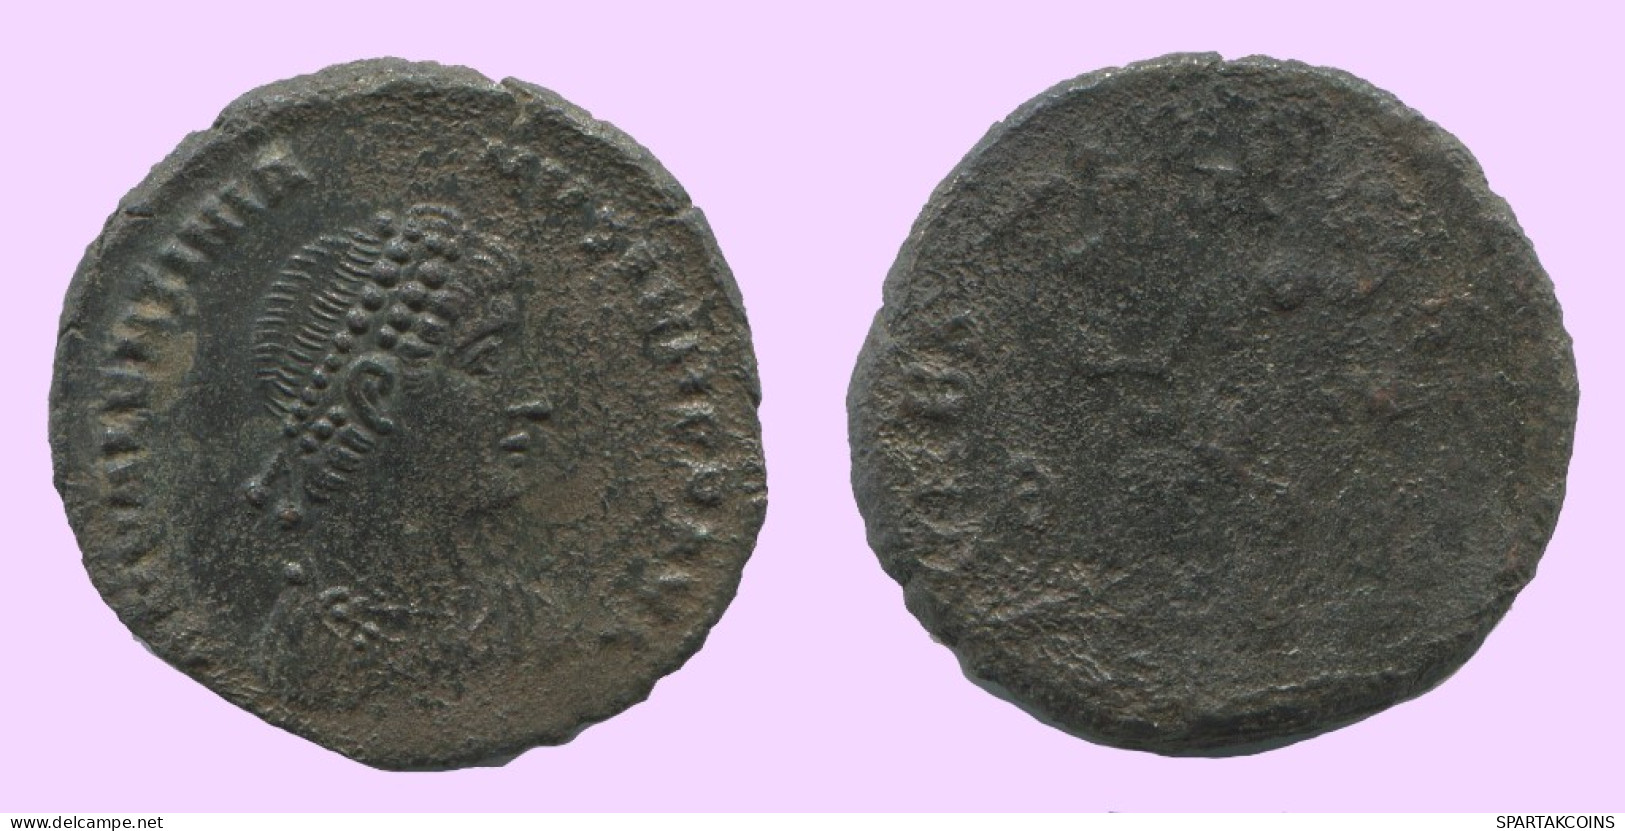 Authentische Antike Spätrömische Münze RÖMISCHE Münze 3.1g/18mm #ANT2406.14.D.A - Der Spätrömanischen Reich (363 / 476)